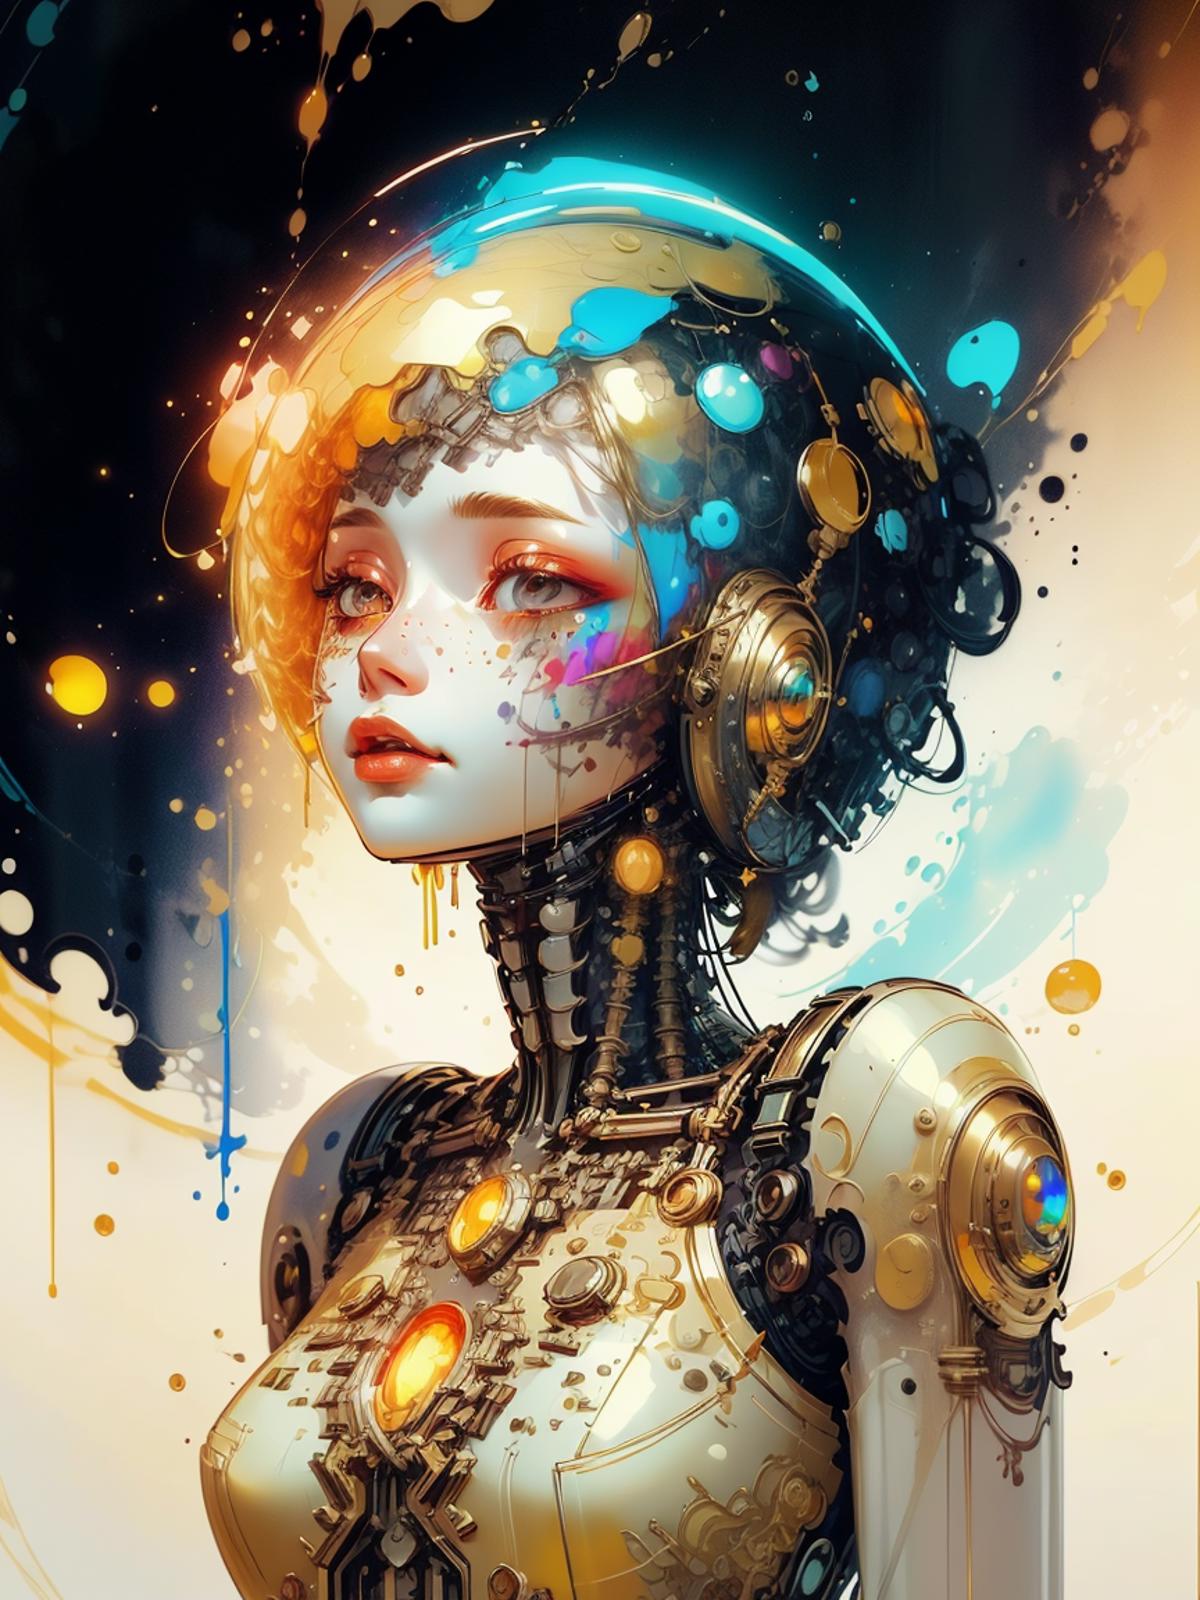 Golden Tech - World Morph image by Code_Breaker_Umbra